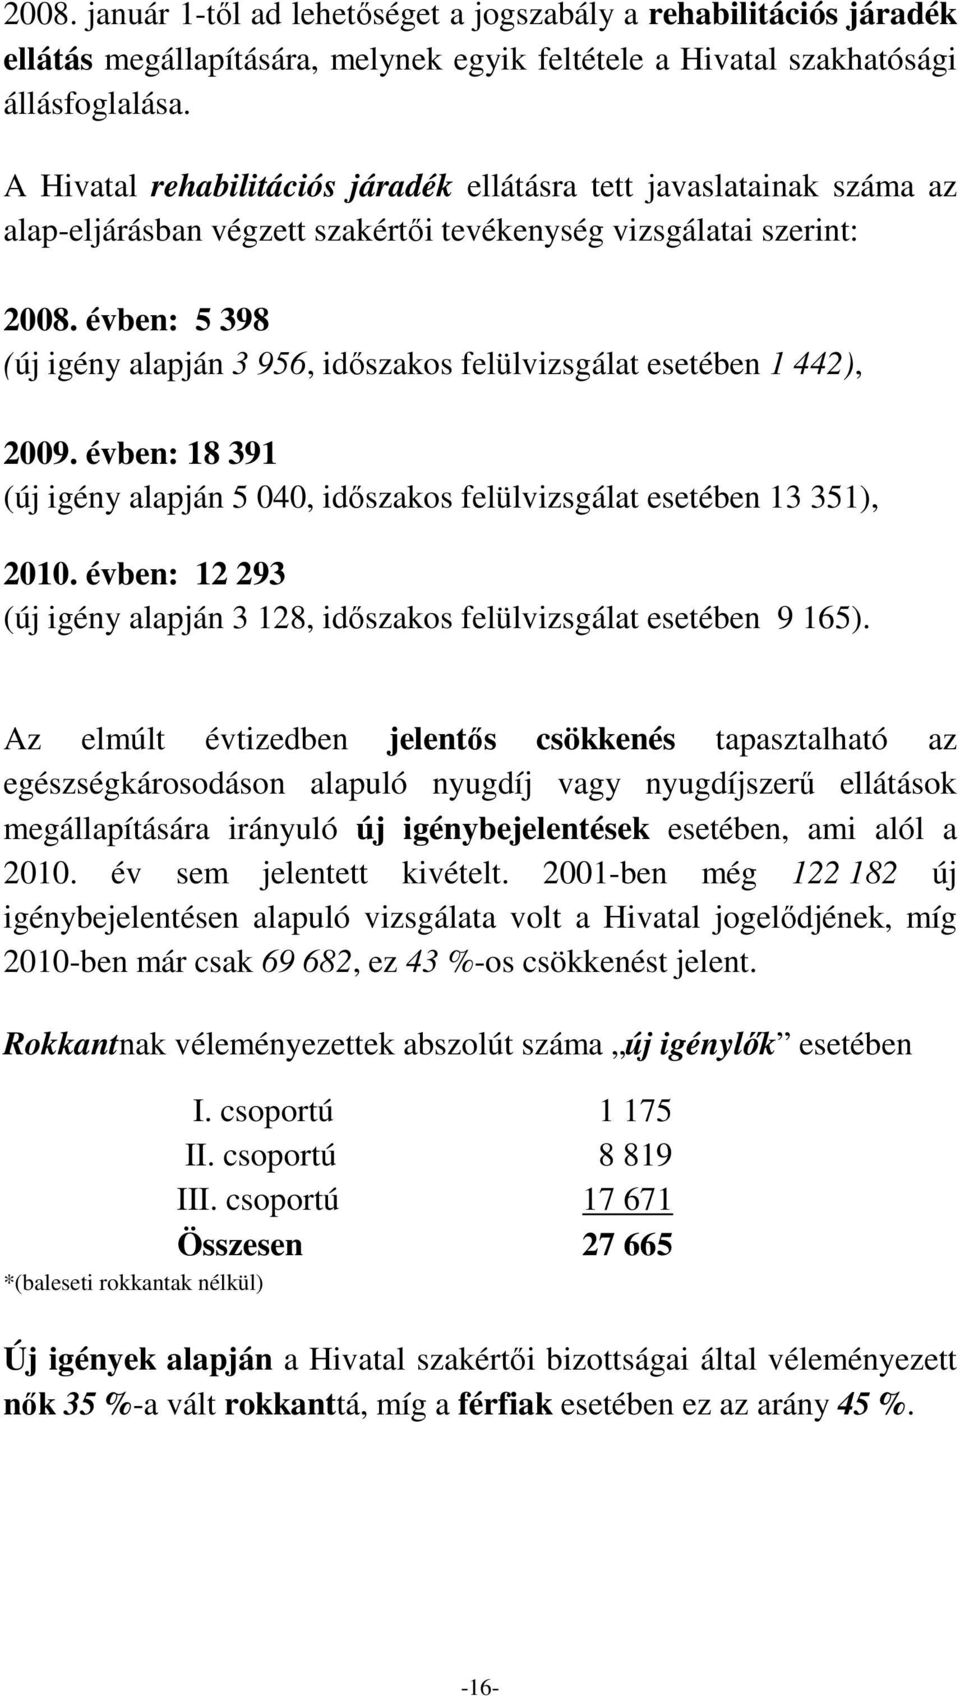 évben: 5 398 (új igény alapján 3 956, idıszakos felülvizsgálat esetében 1 442), 2009. évben: 18 391 (új igény alapján 5 040, idıszakos felülvizsgálat esetében 13 351),.